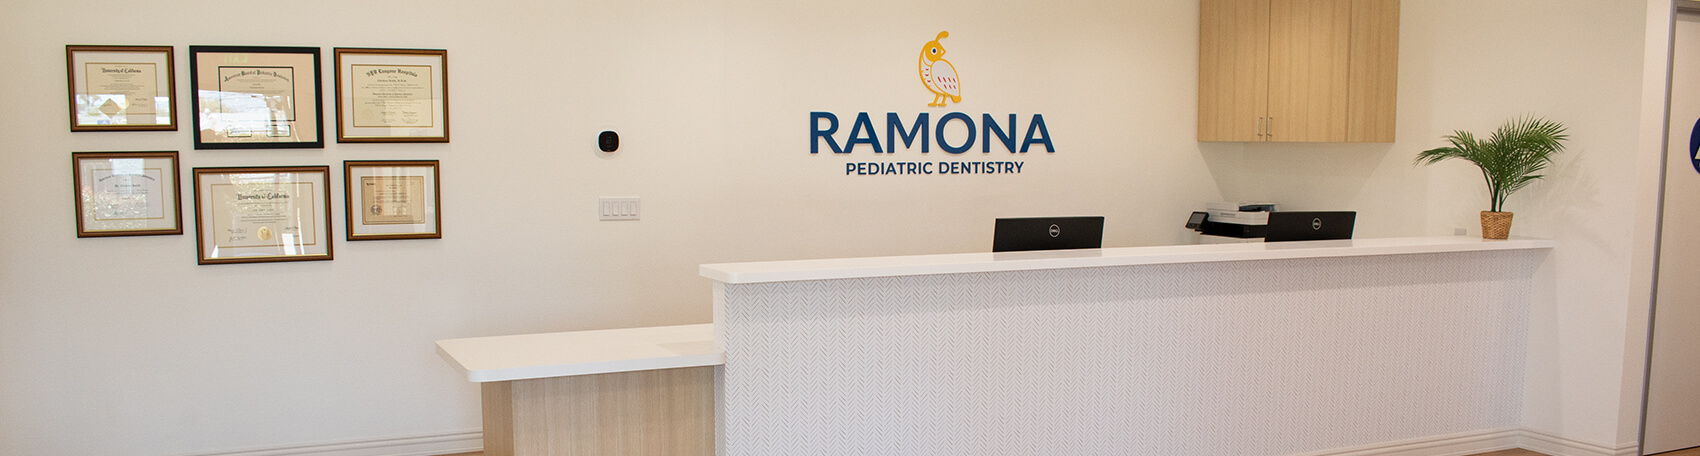 Ramona Pediatric Dentistry front desk